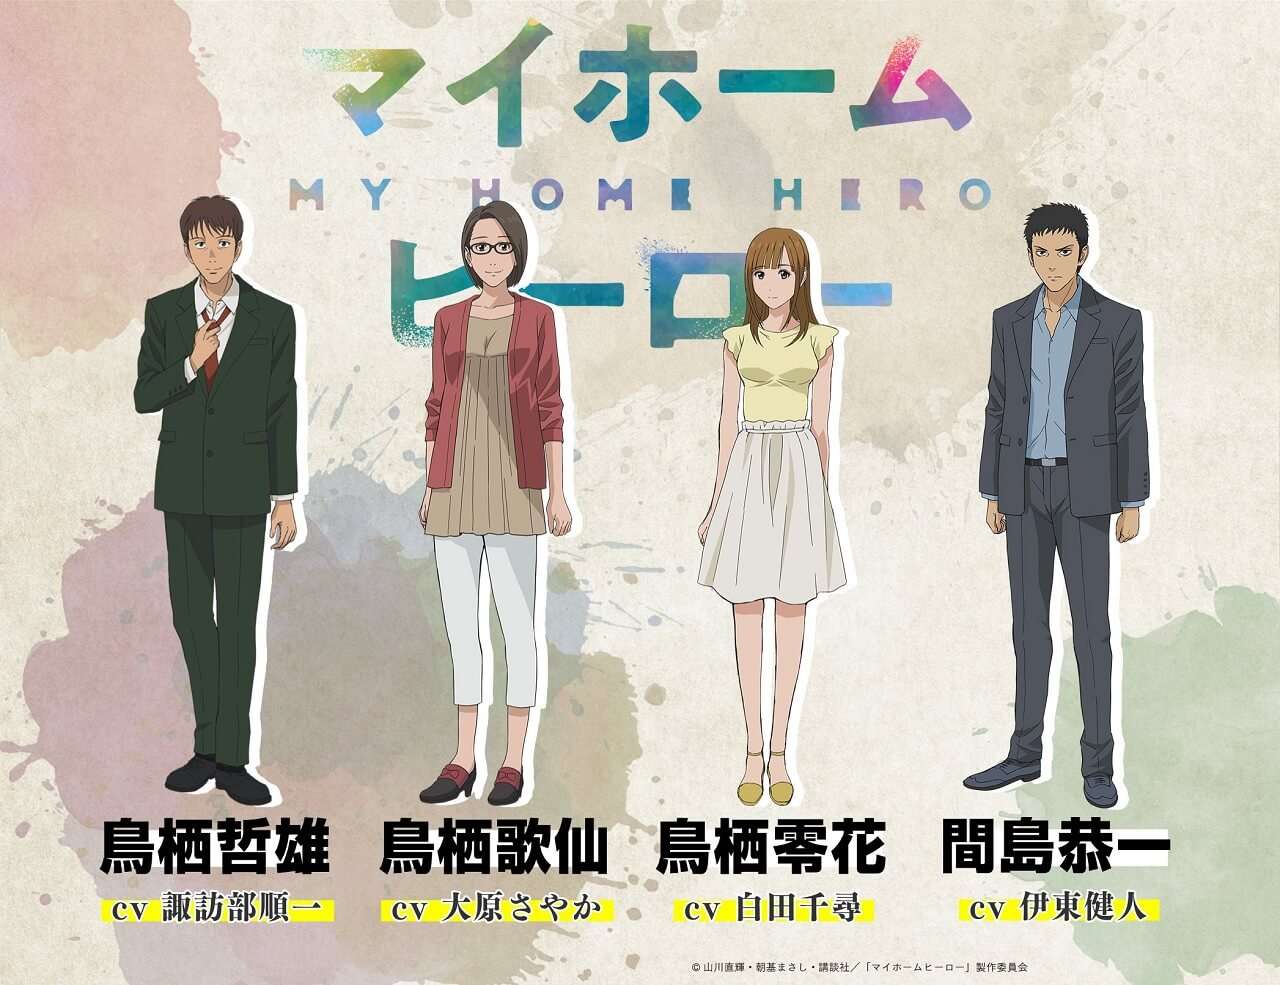 My Home Hero - Anime revela Estreia em Vídeo Promo